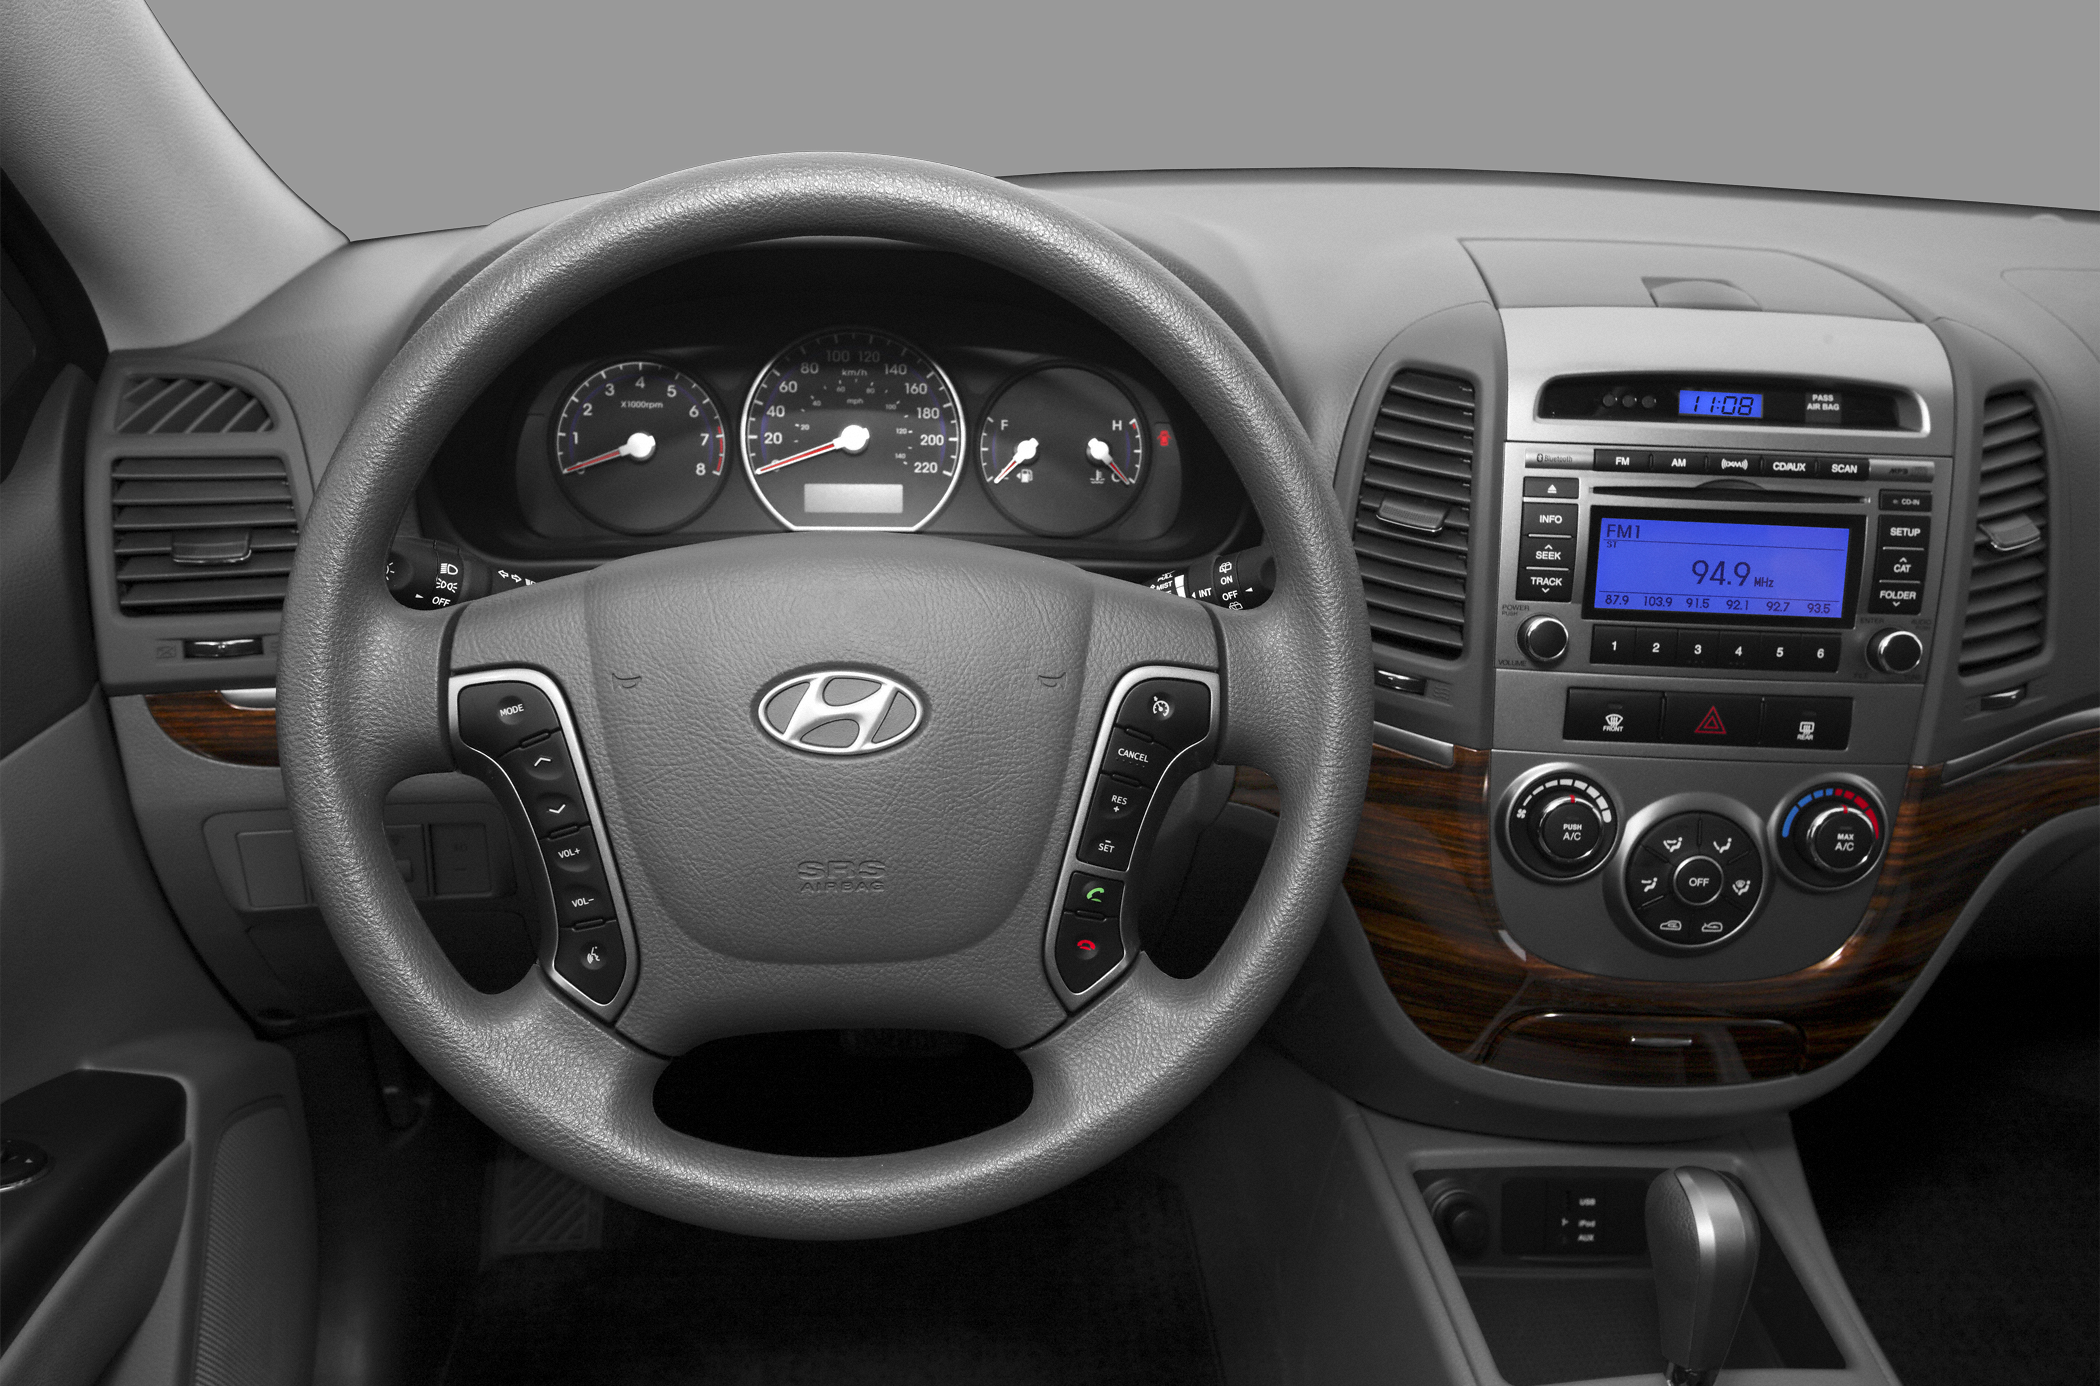 2011 Hyundai Santa Fe